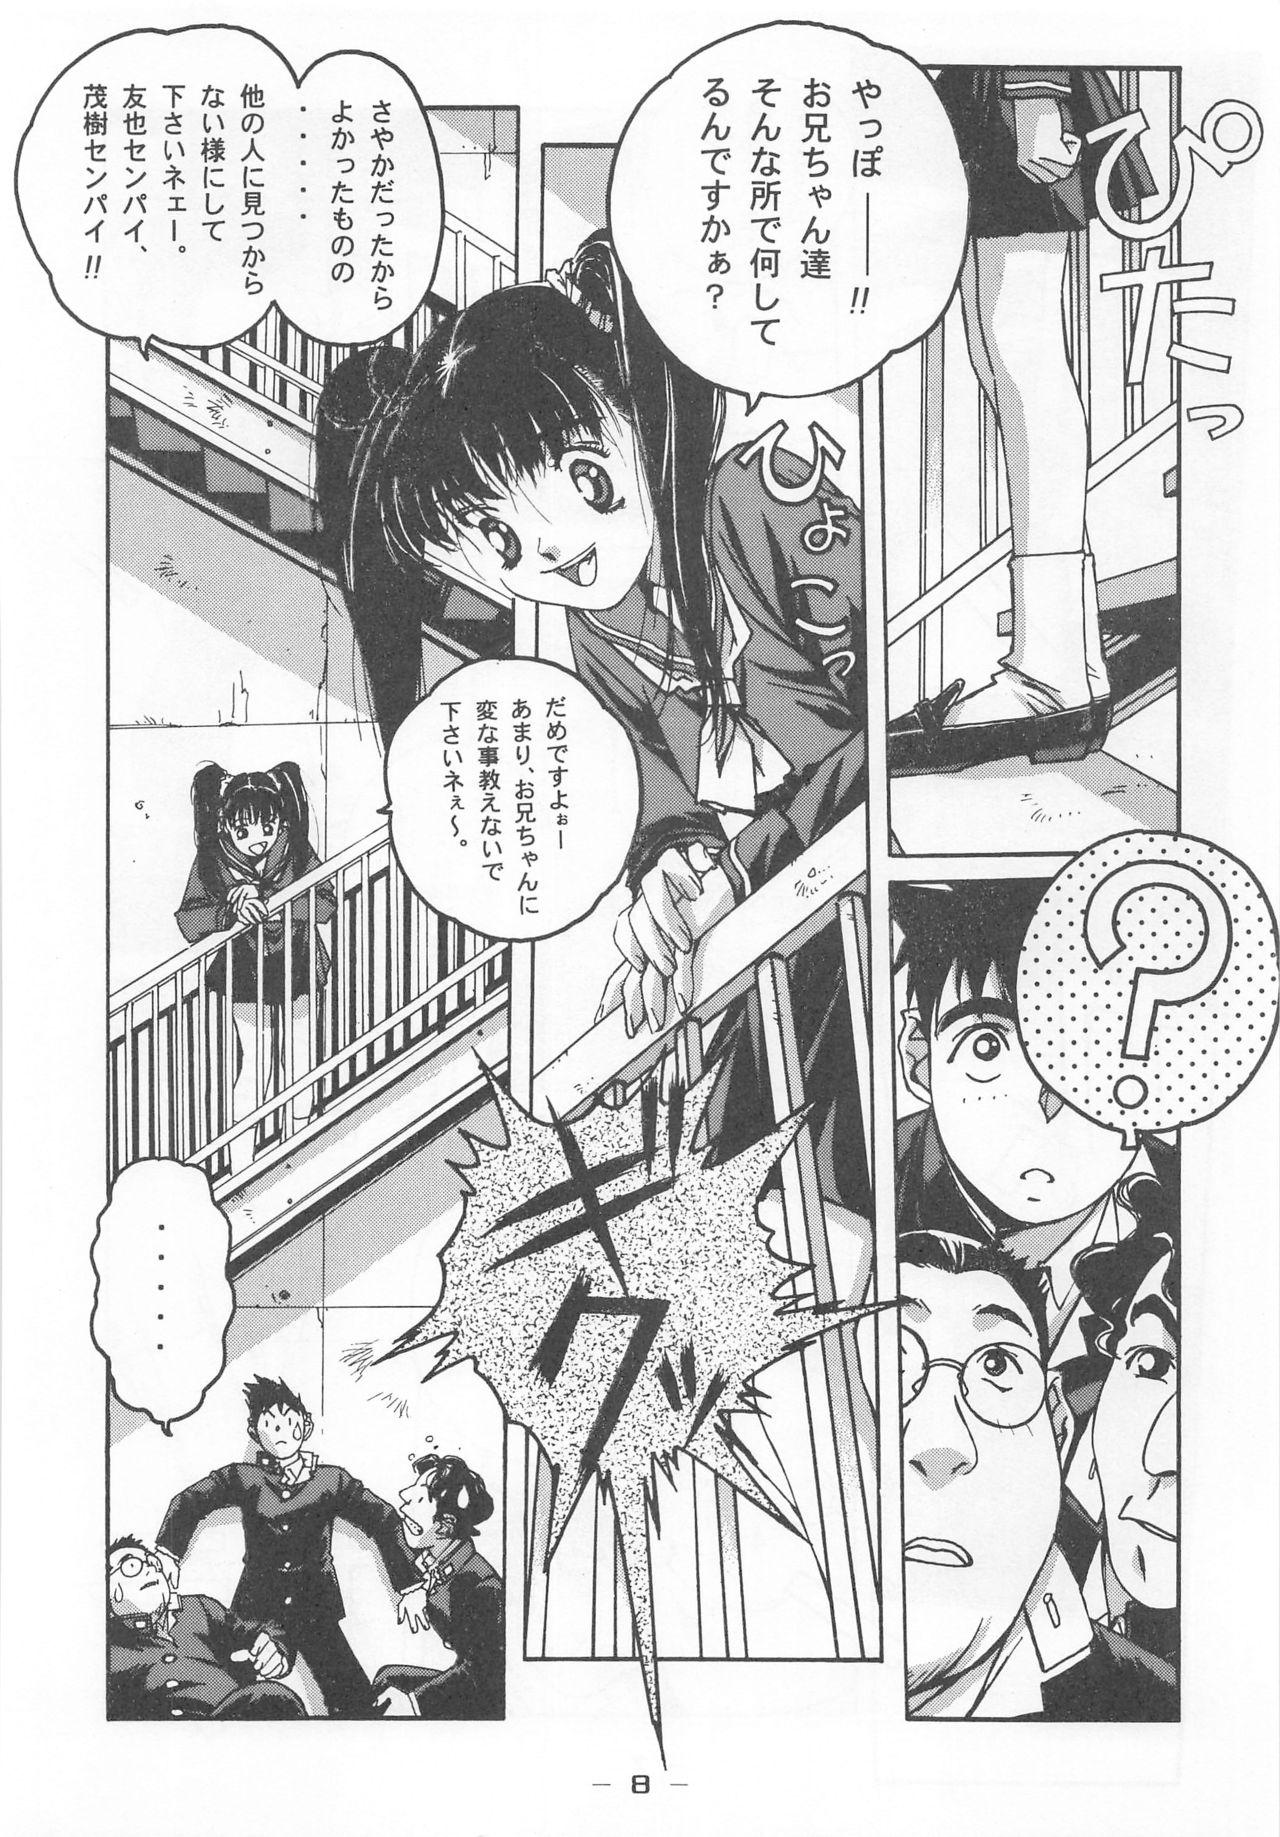 Otonano Do-wa Vol. 7 6